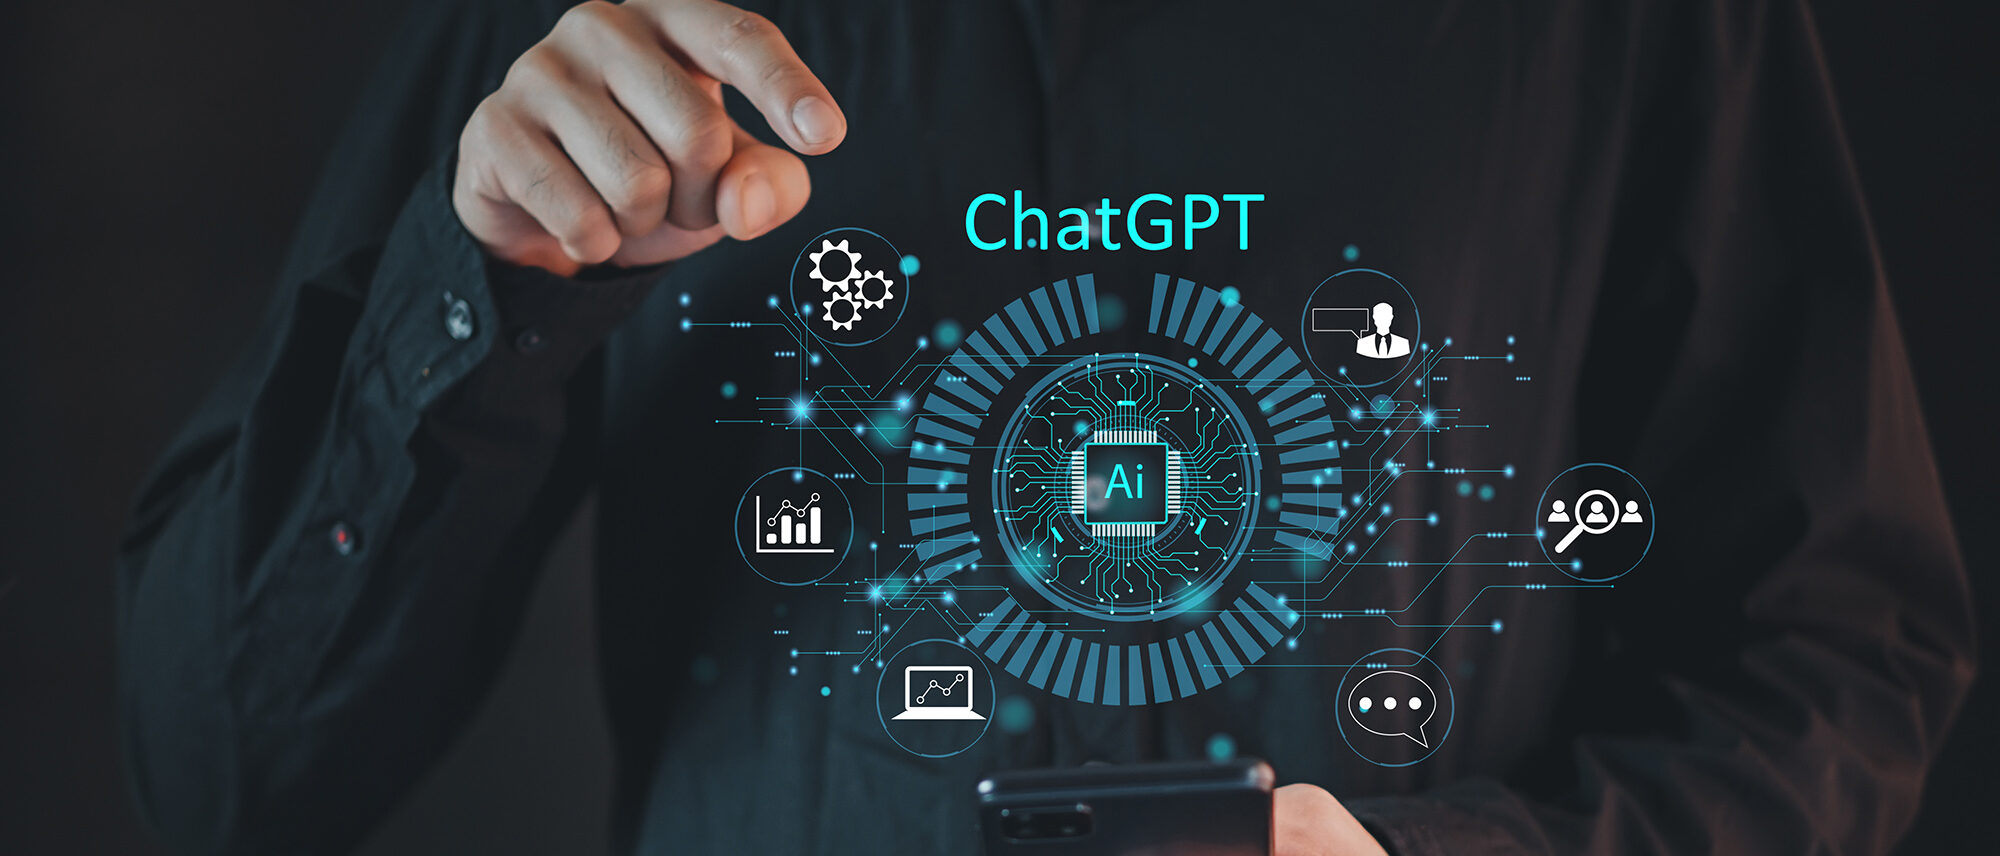 ChatGPT gekonnt für die Betriebsführung einsetzen. Foto: NOTE OMG / Adobe Stock